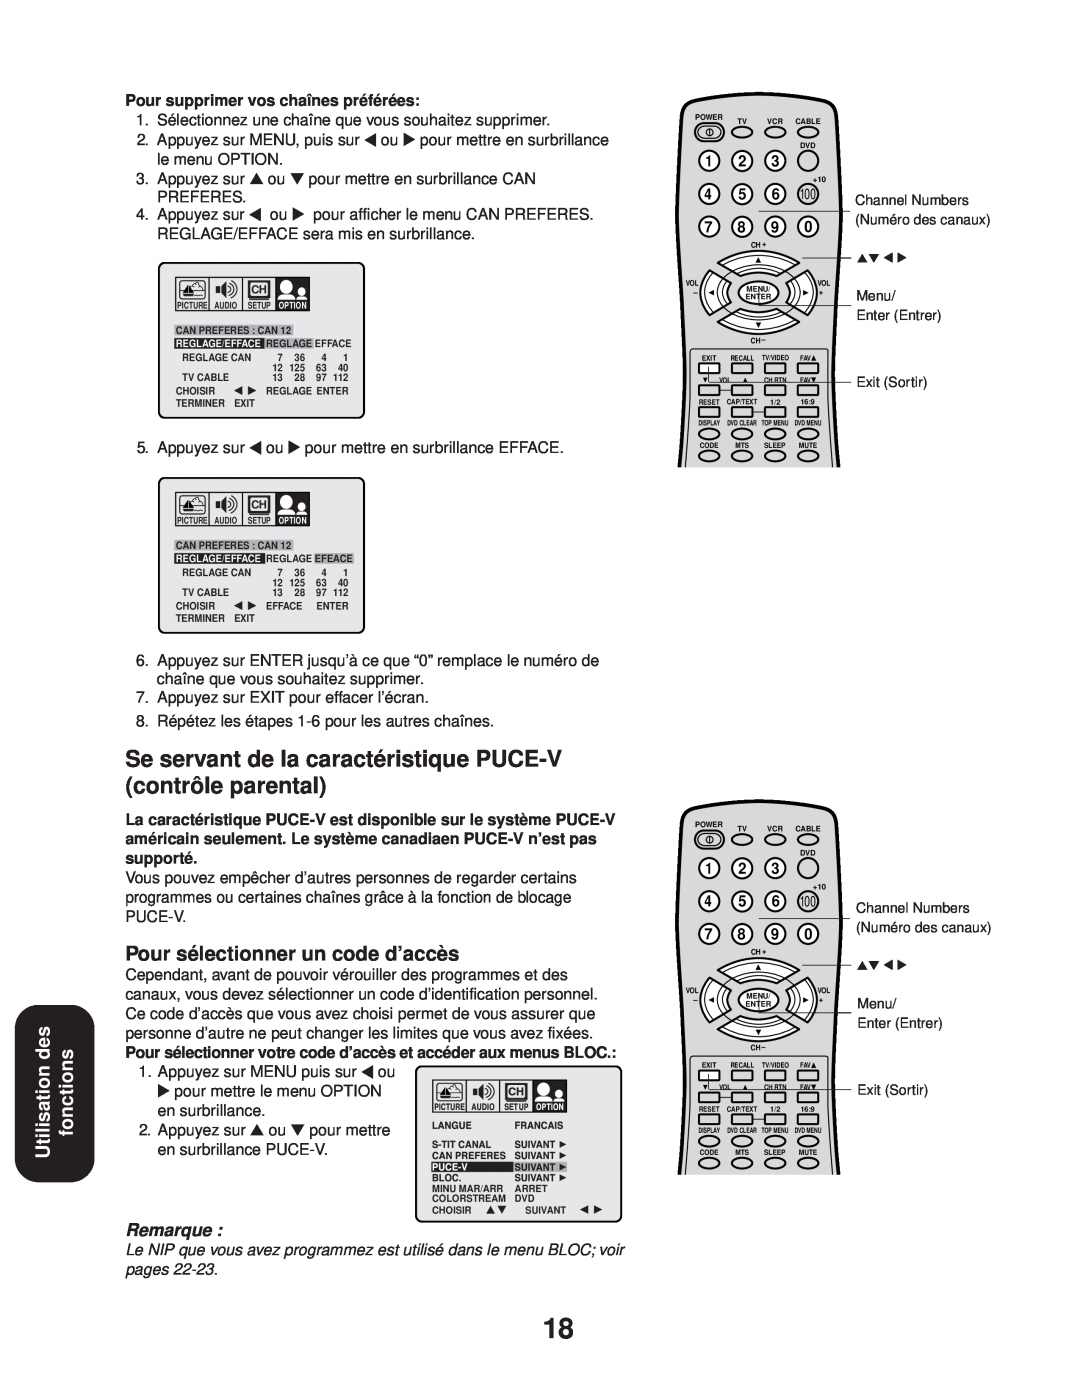 Toshiba 24AF43, 20AF43 Se servant de la caractéristique PUCE-V contrôle parental, Utilisation des fonctions, Remarque 